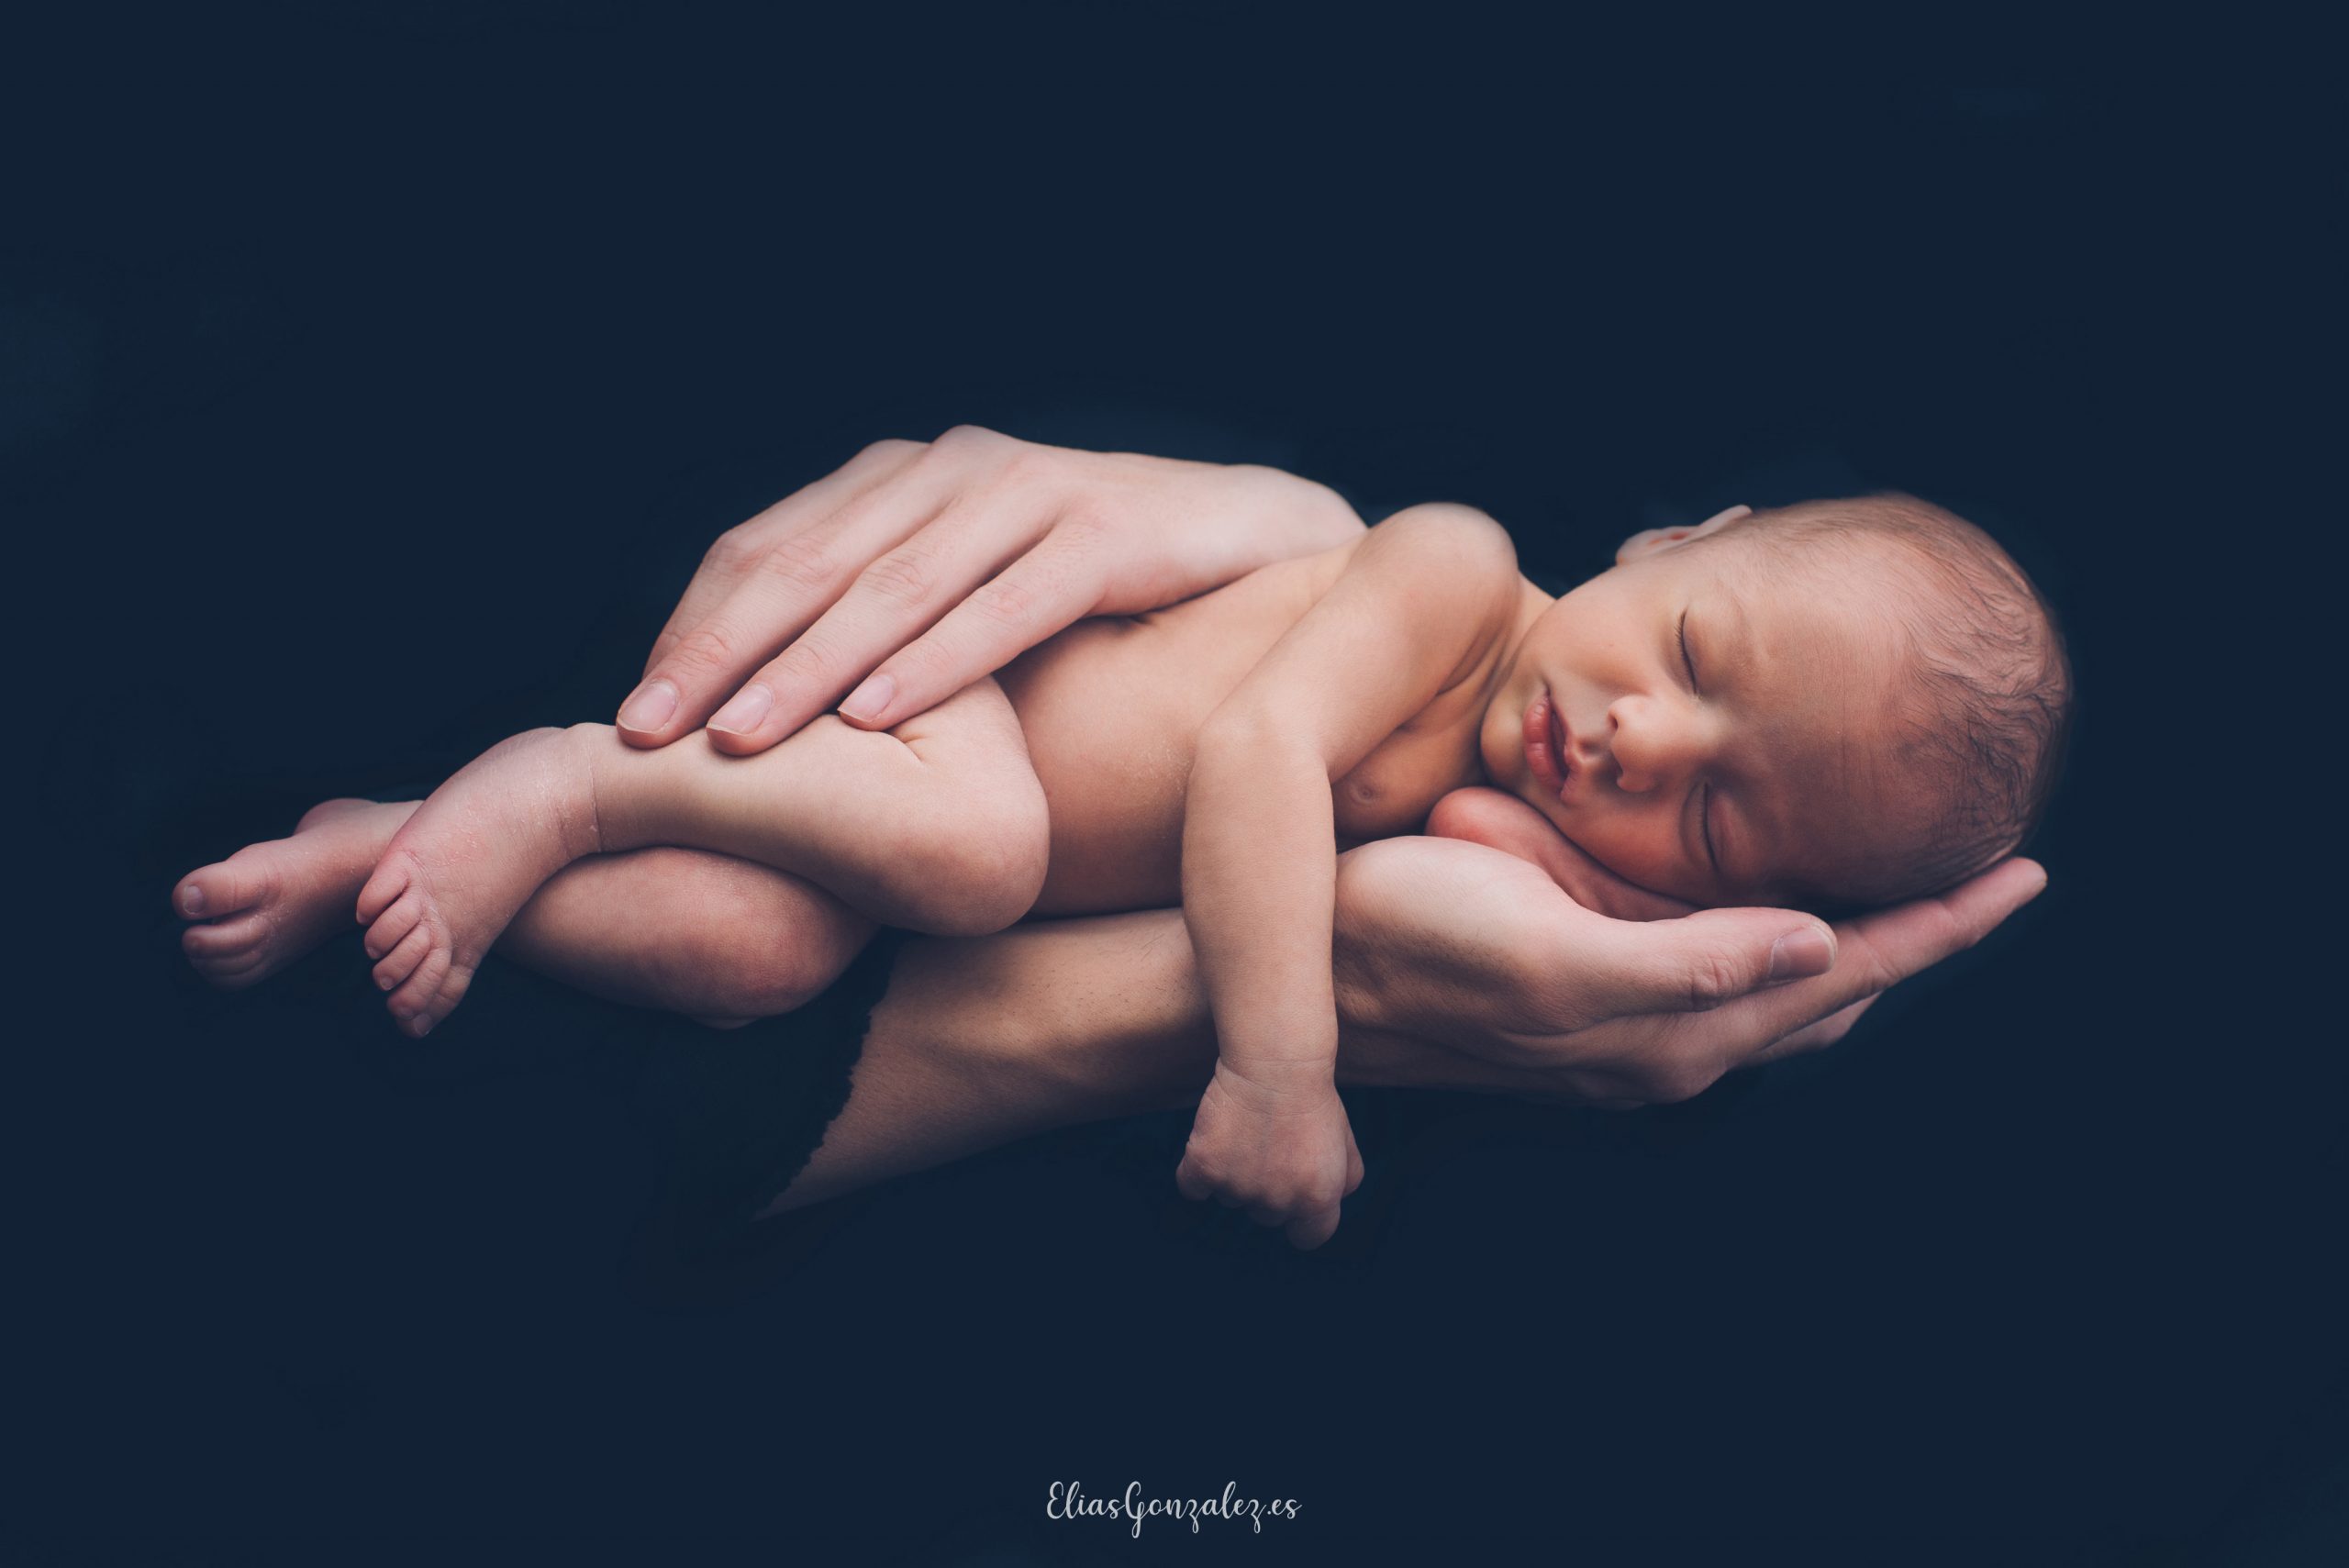 Fotos Recien Nacido Bebe